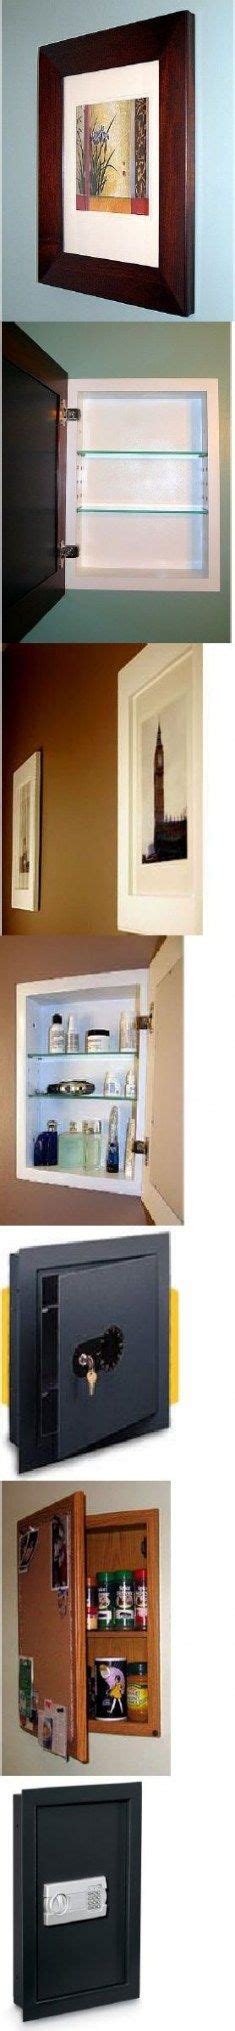 Craft Storage Hidden Medicine Cabinets 16 Ideas Hidden Storage